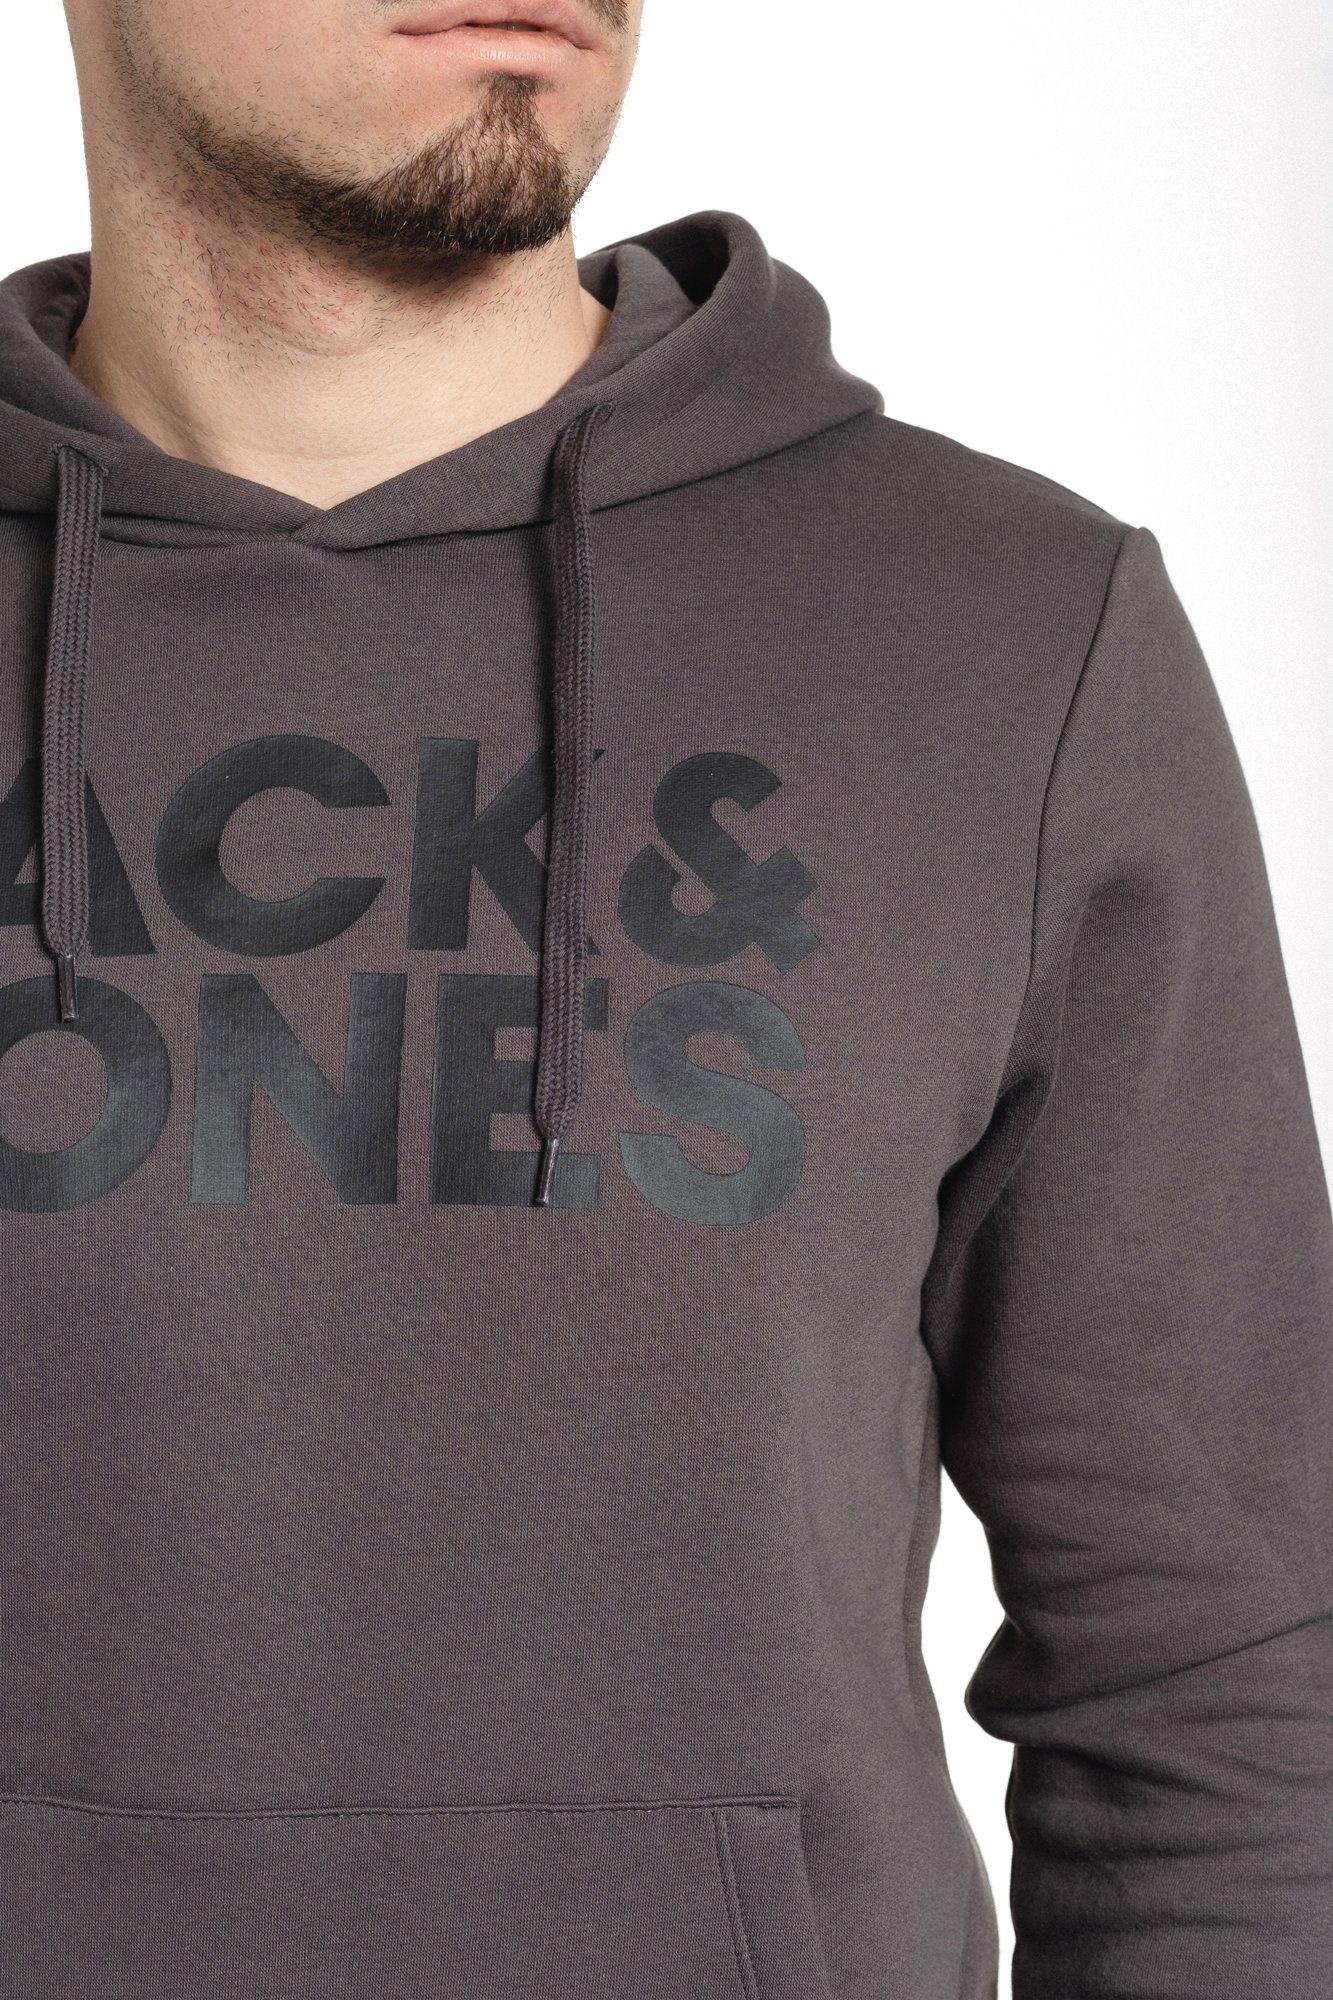 & Jack Kängurutasche Kapuzensweatshirt mit Asphalt-Black Jones